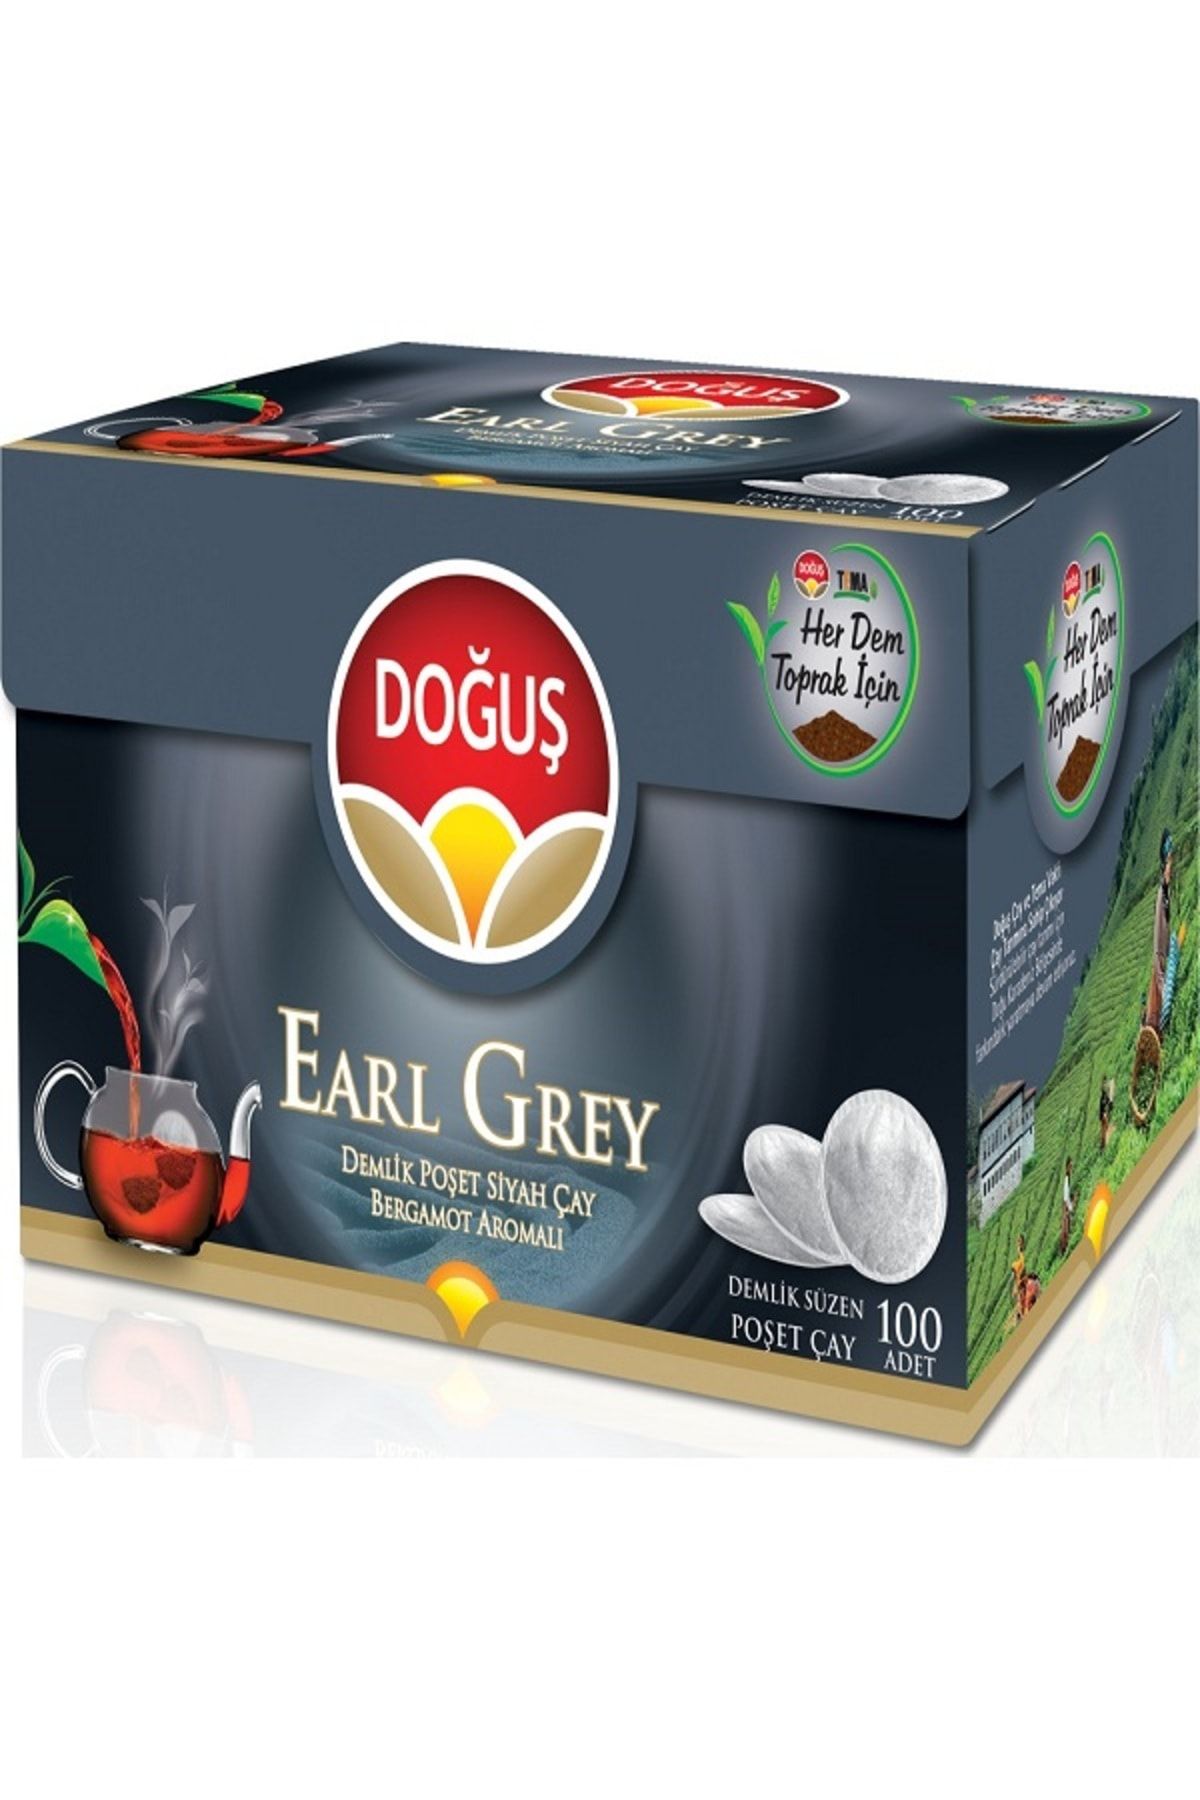 Doğuş Earl Grey Demlik Poşet Çay 100 gr